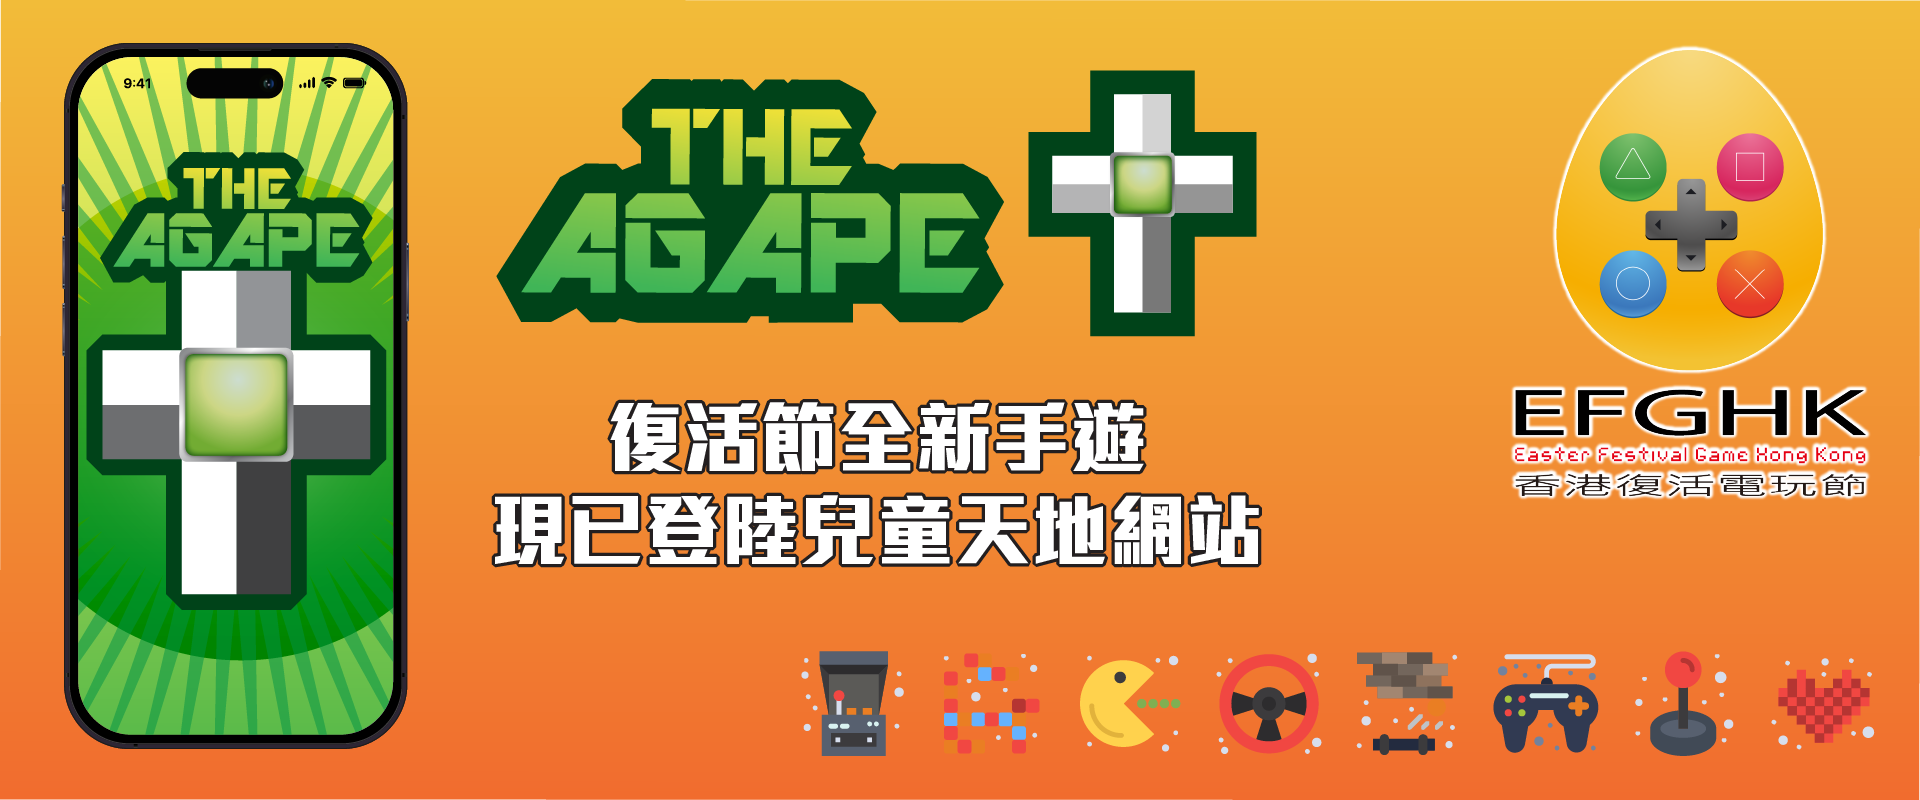 香港復活電玩節推出全新手遊 The Agape+